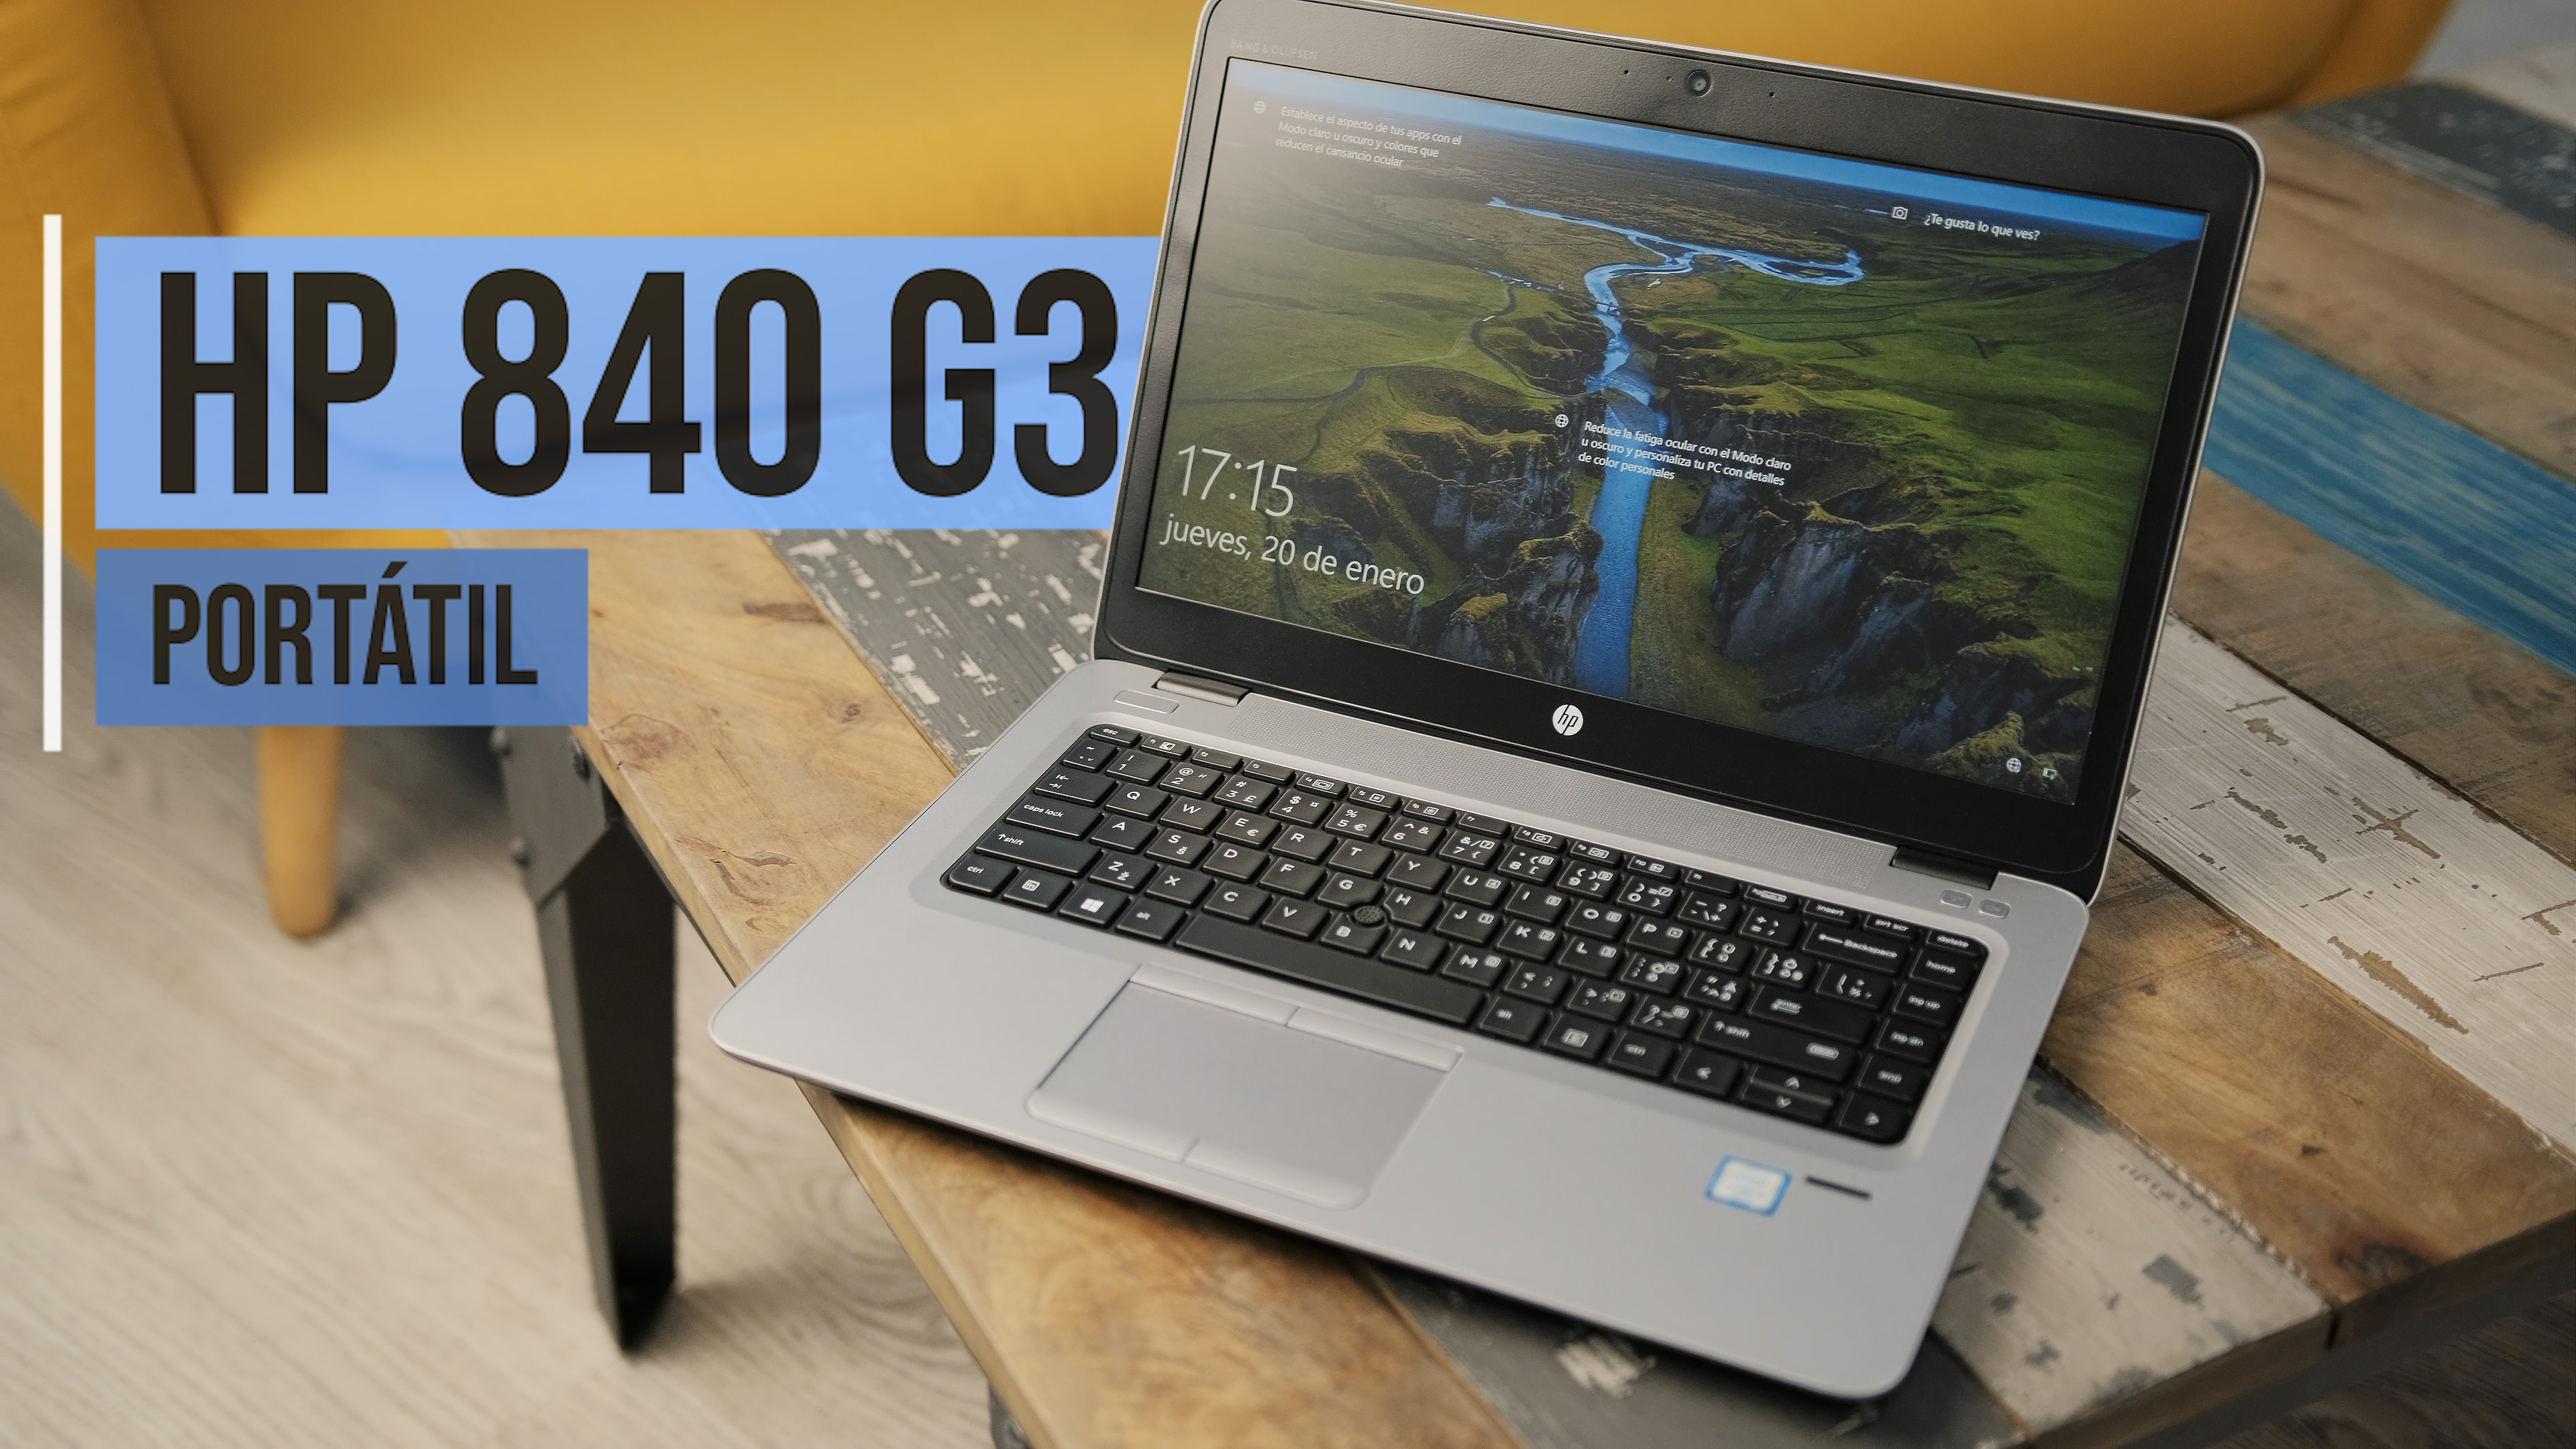 Análisis y review del HP 840 G3 reacondicionado barato - Blog Info-Computer